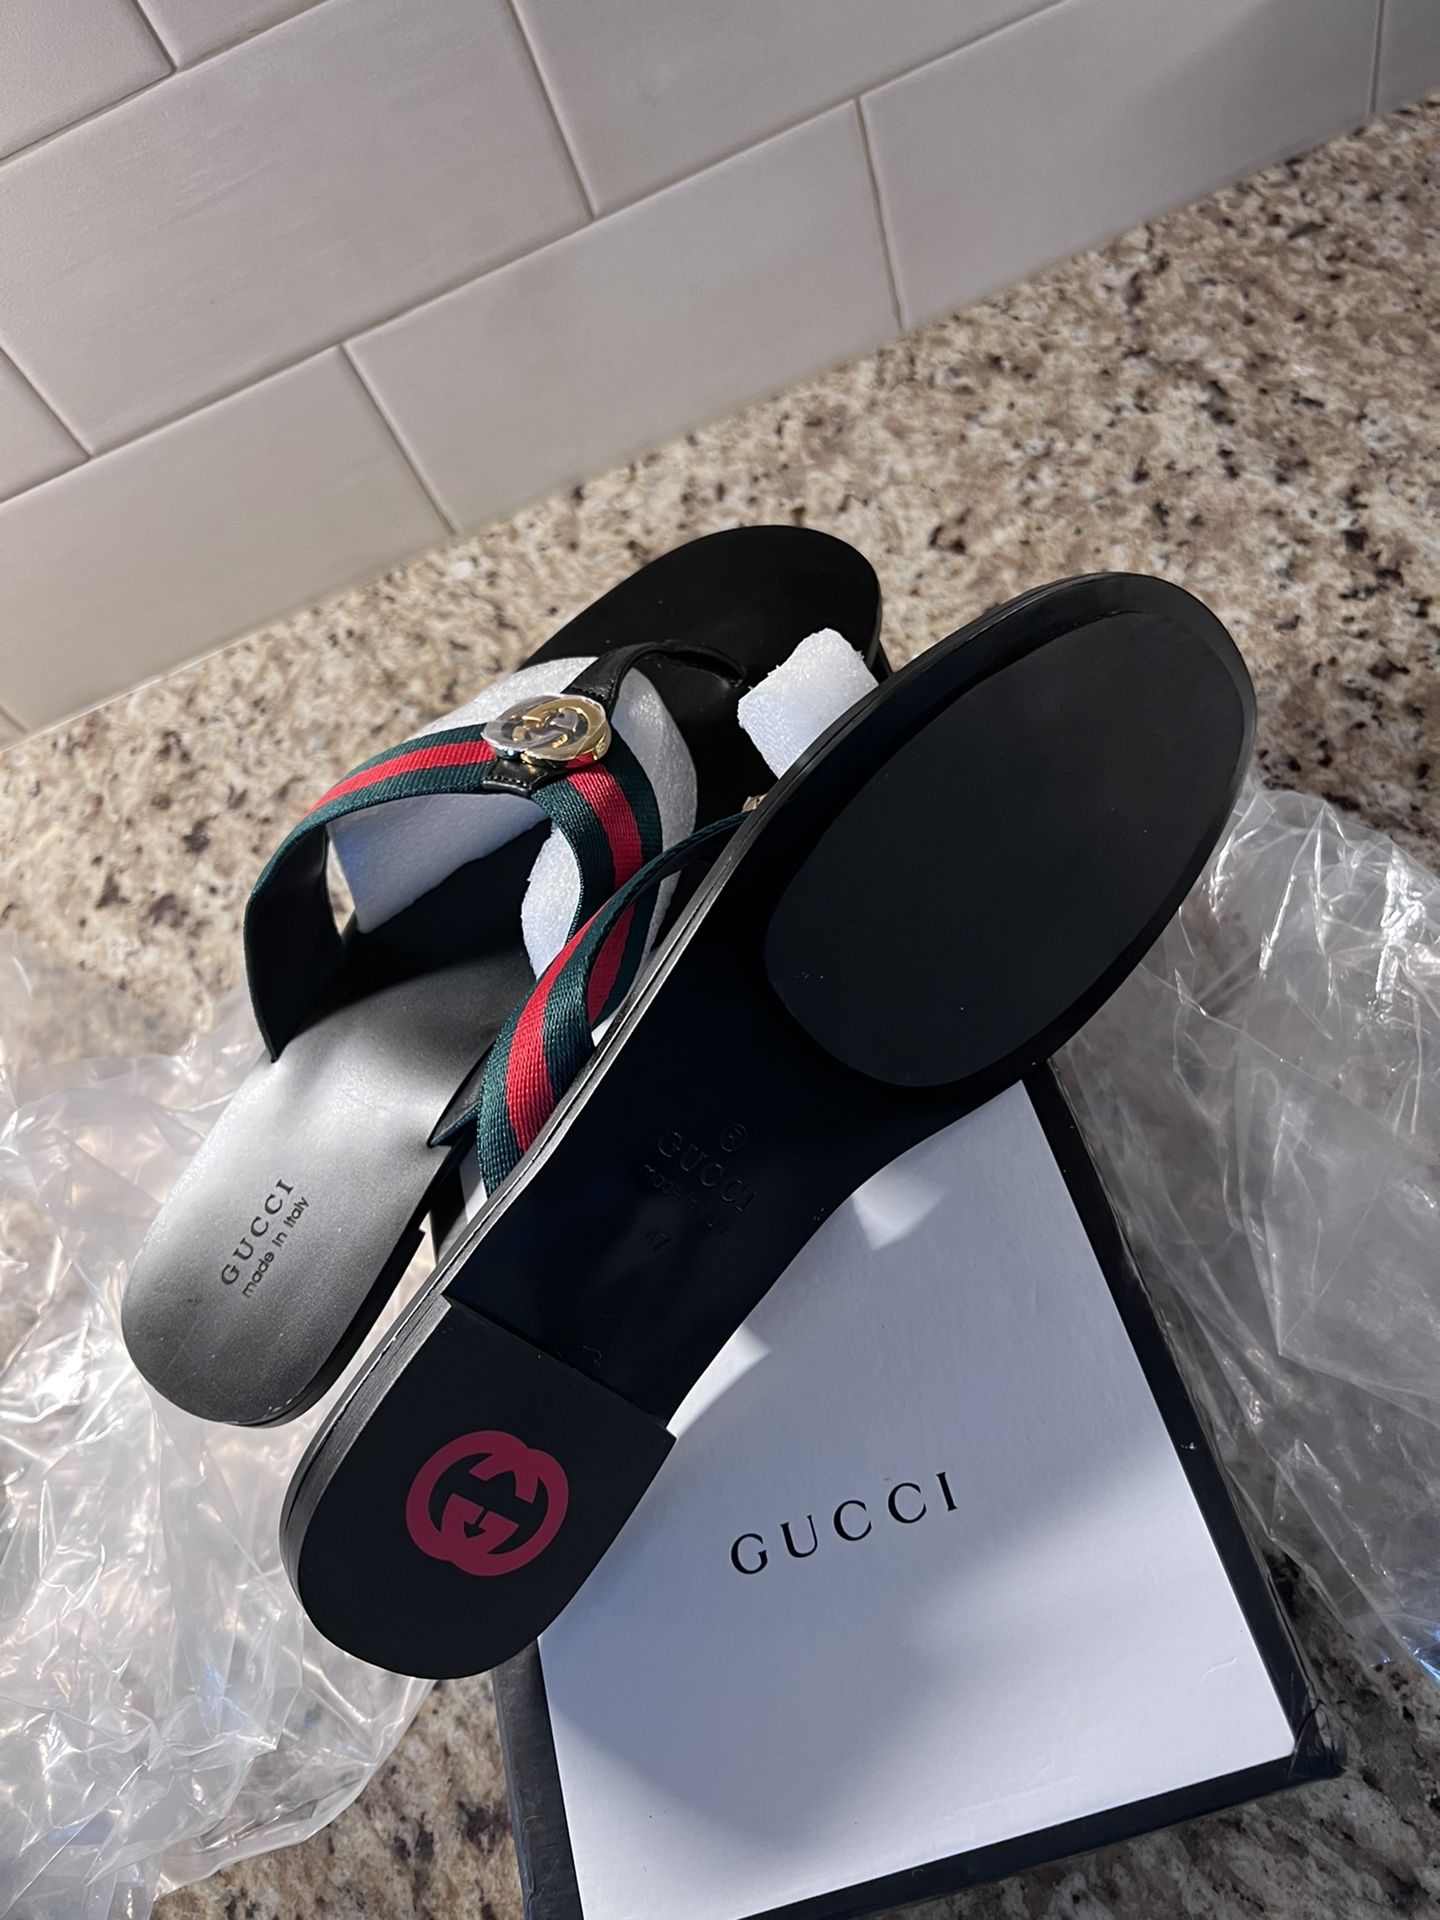 Gucci Men's Kika Thong Sandals